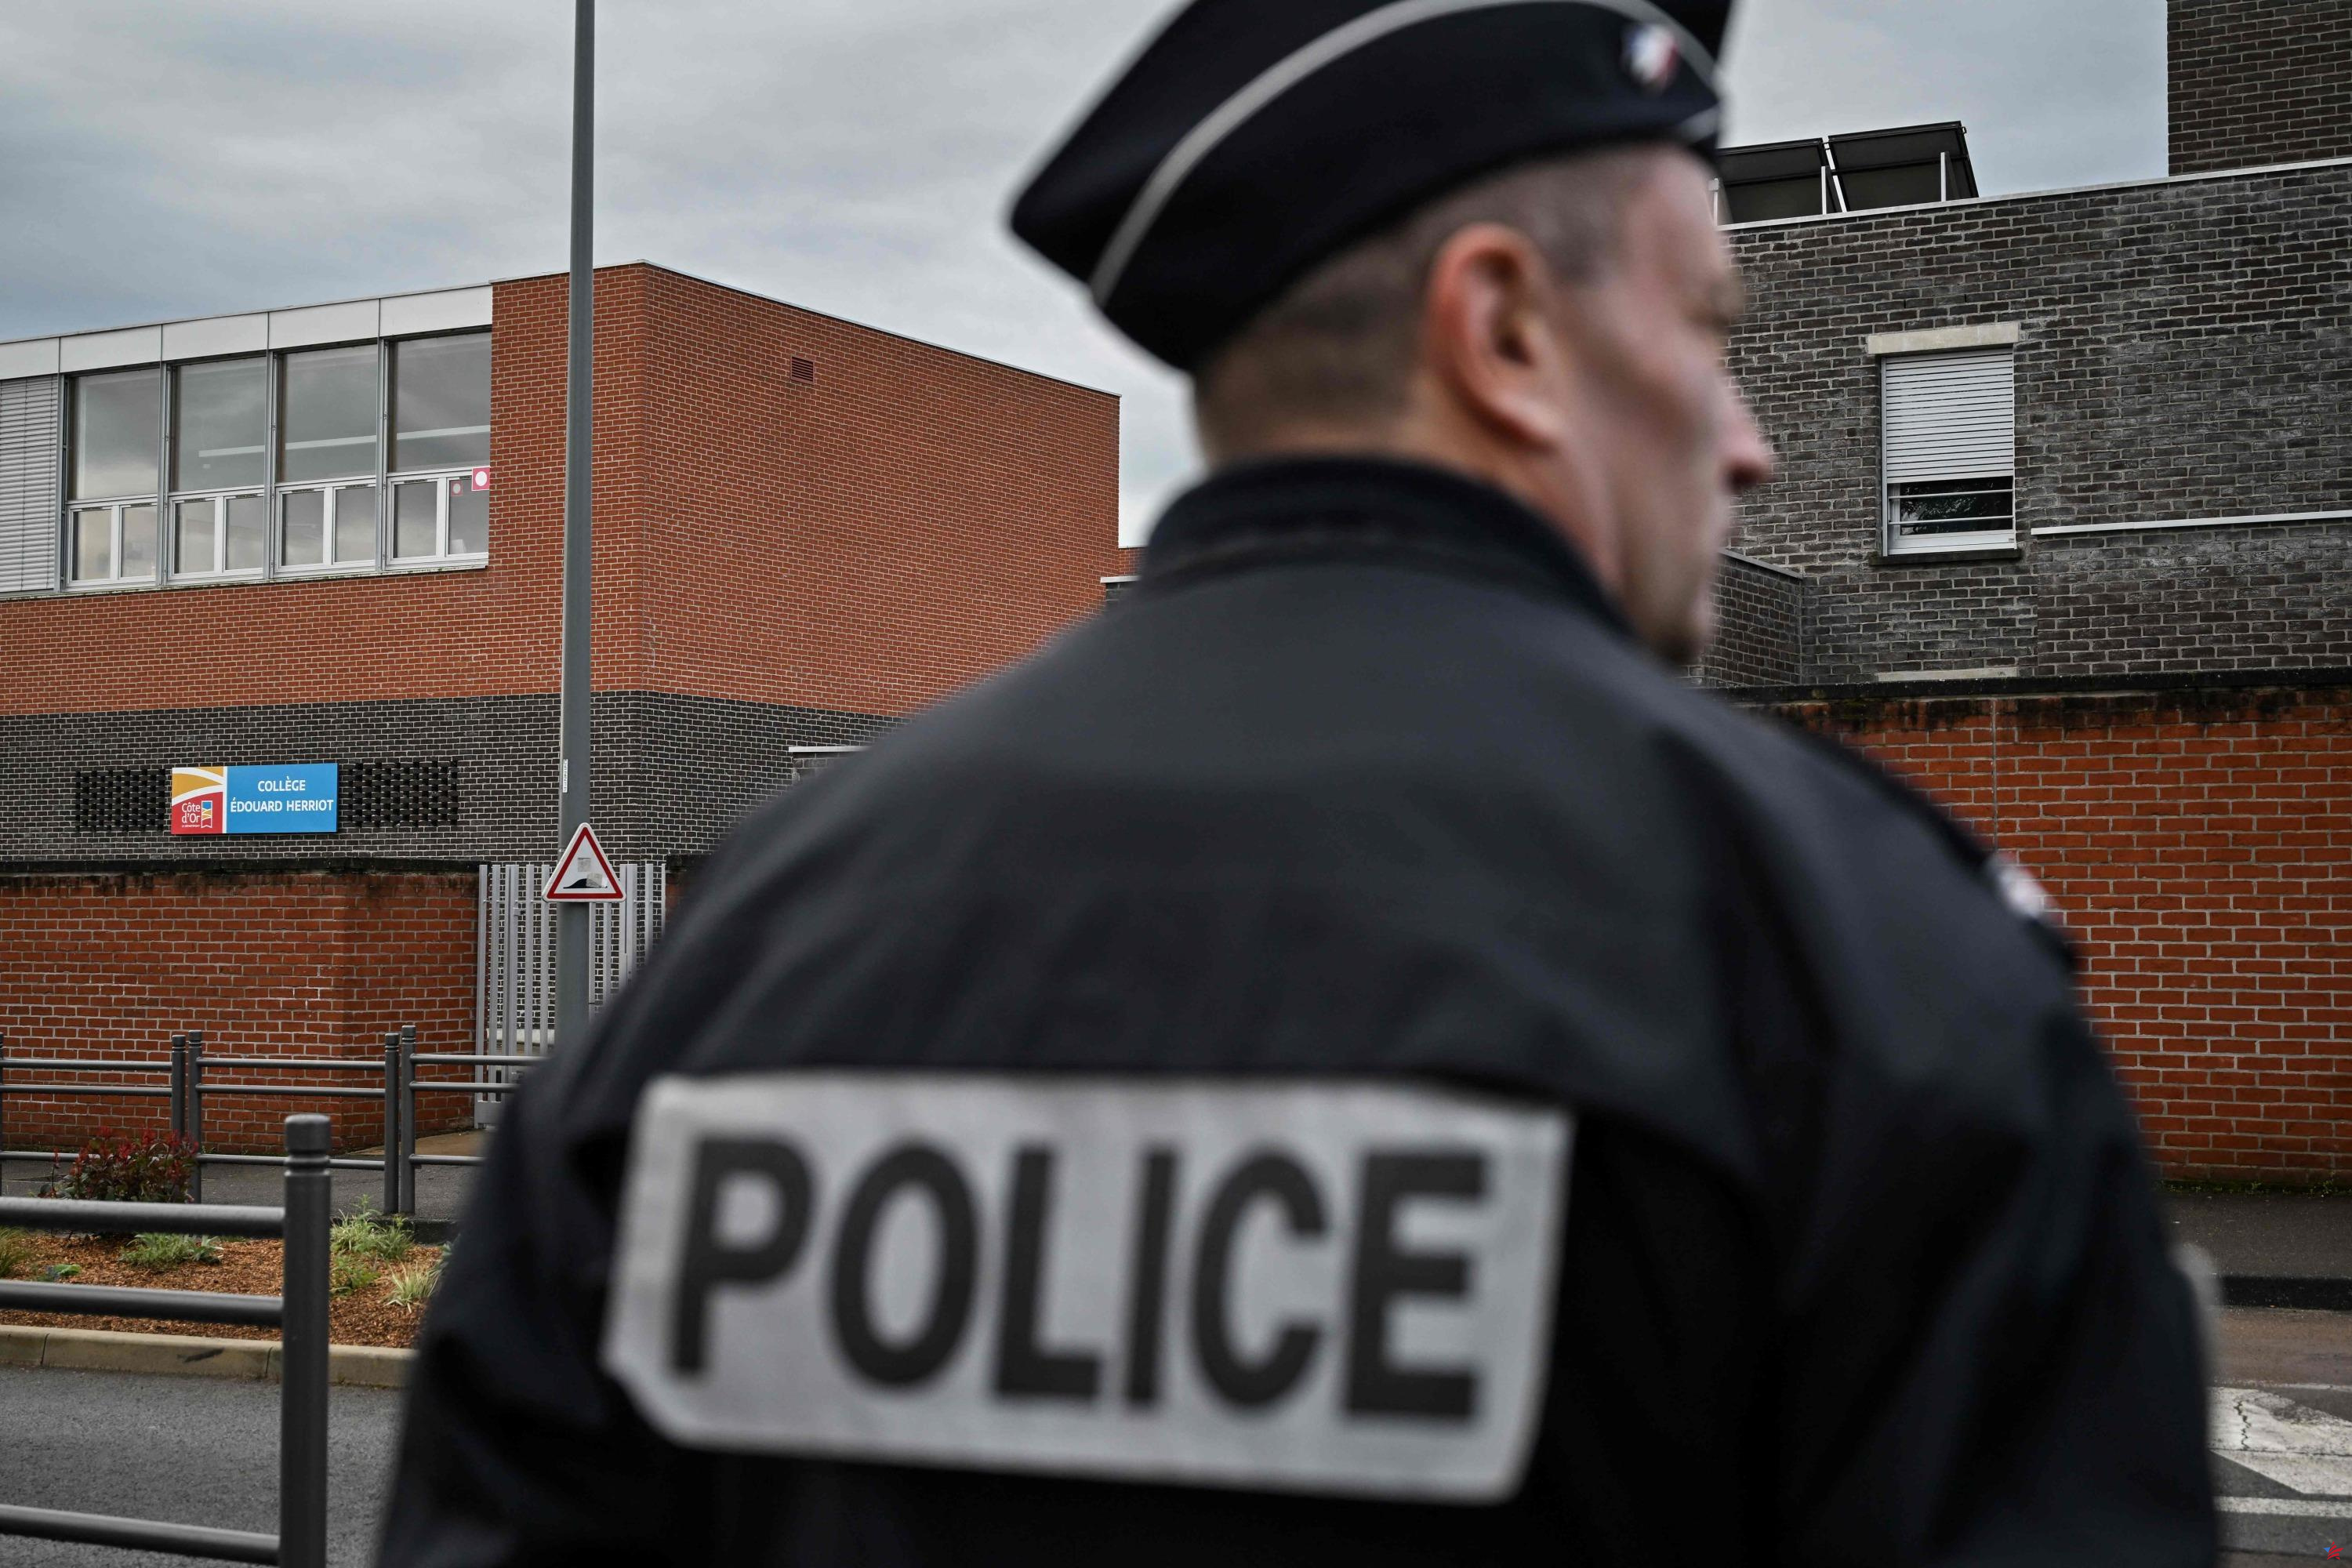 Essonne: tras 10 días de fuga, un policía condenado por violación fue detenido